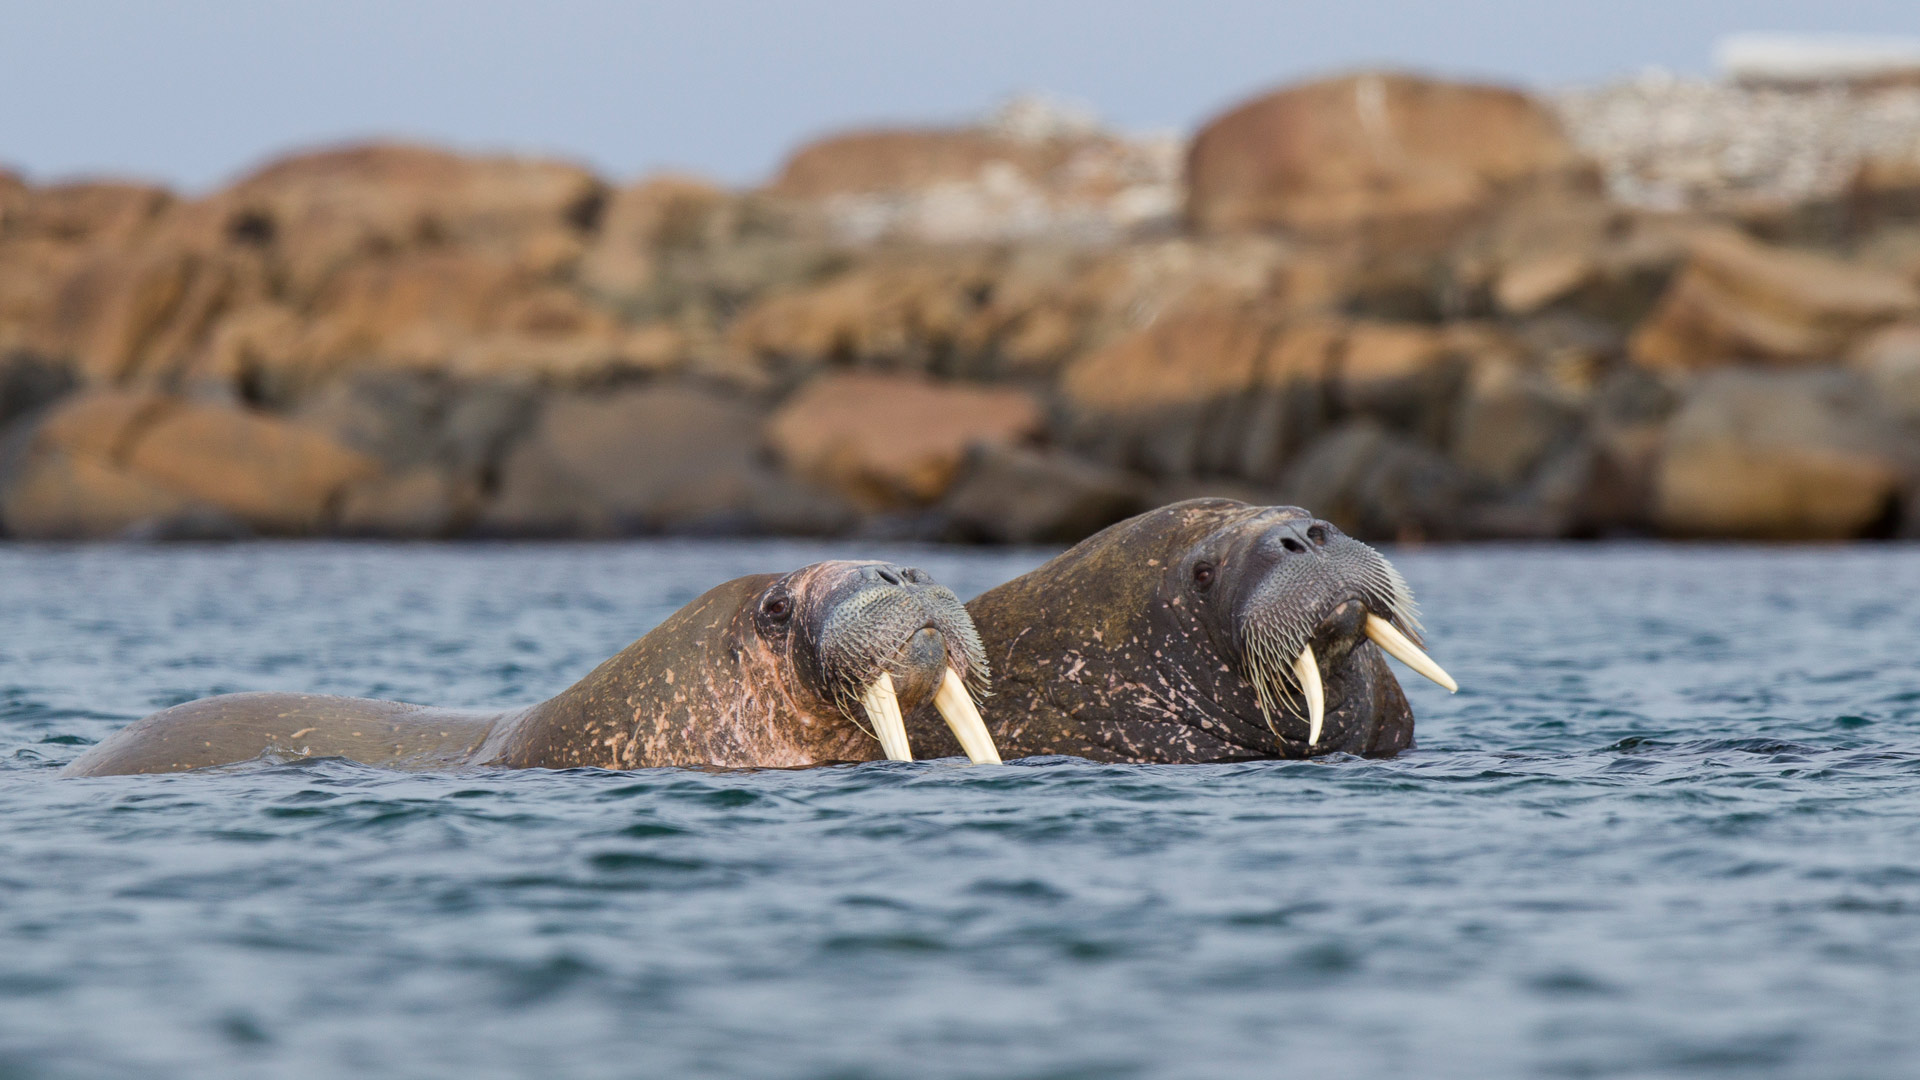 Walrus pair at sea in Svalbard